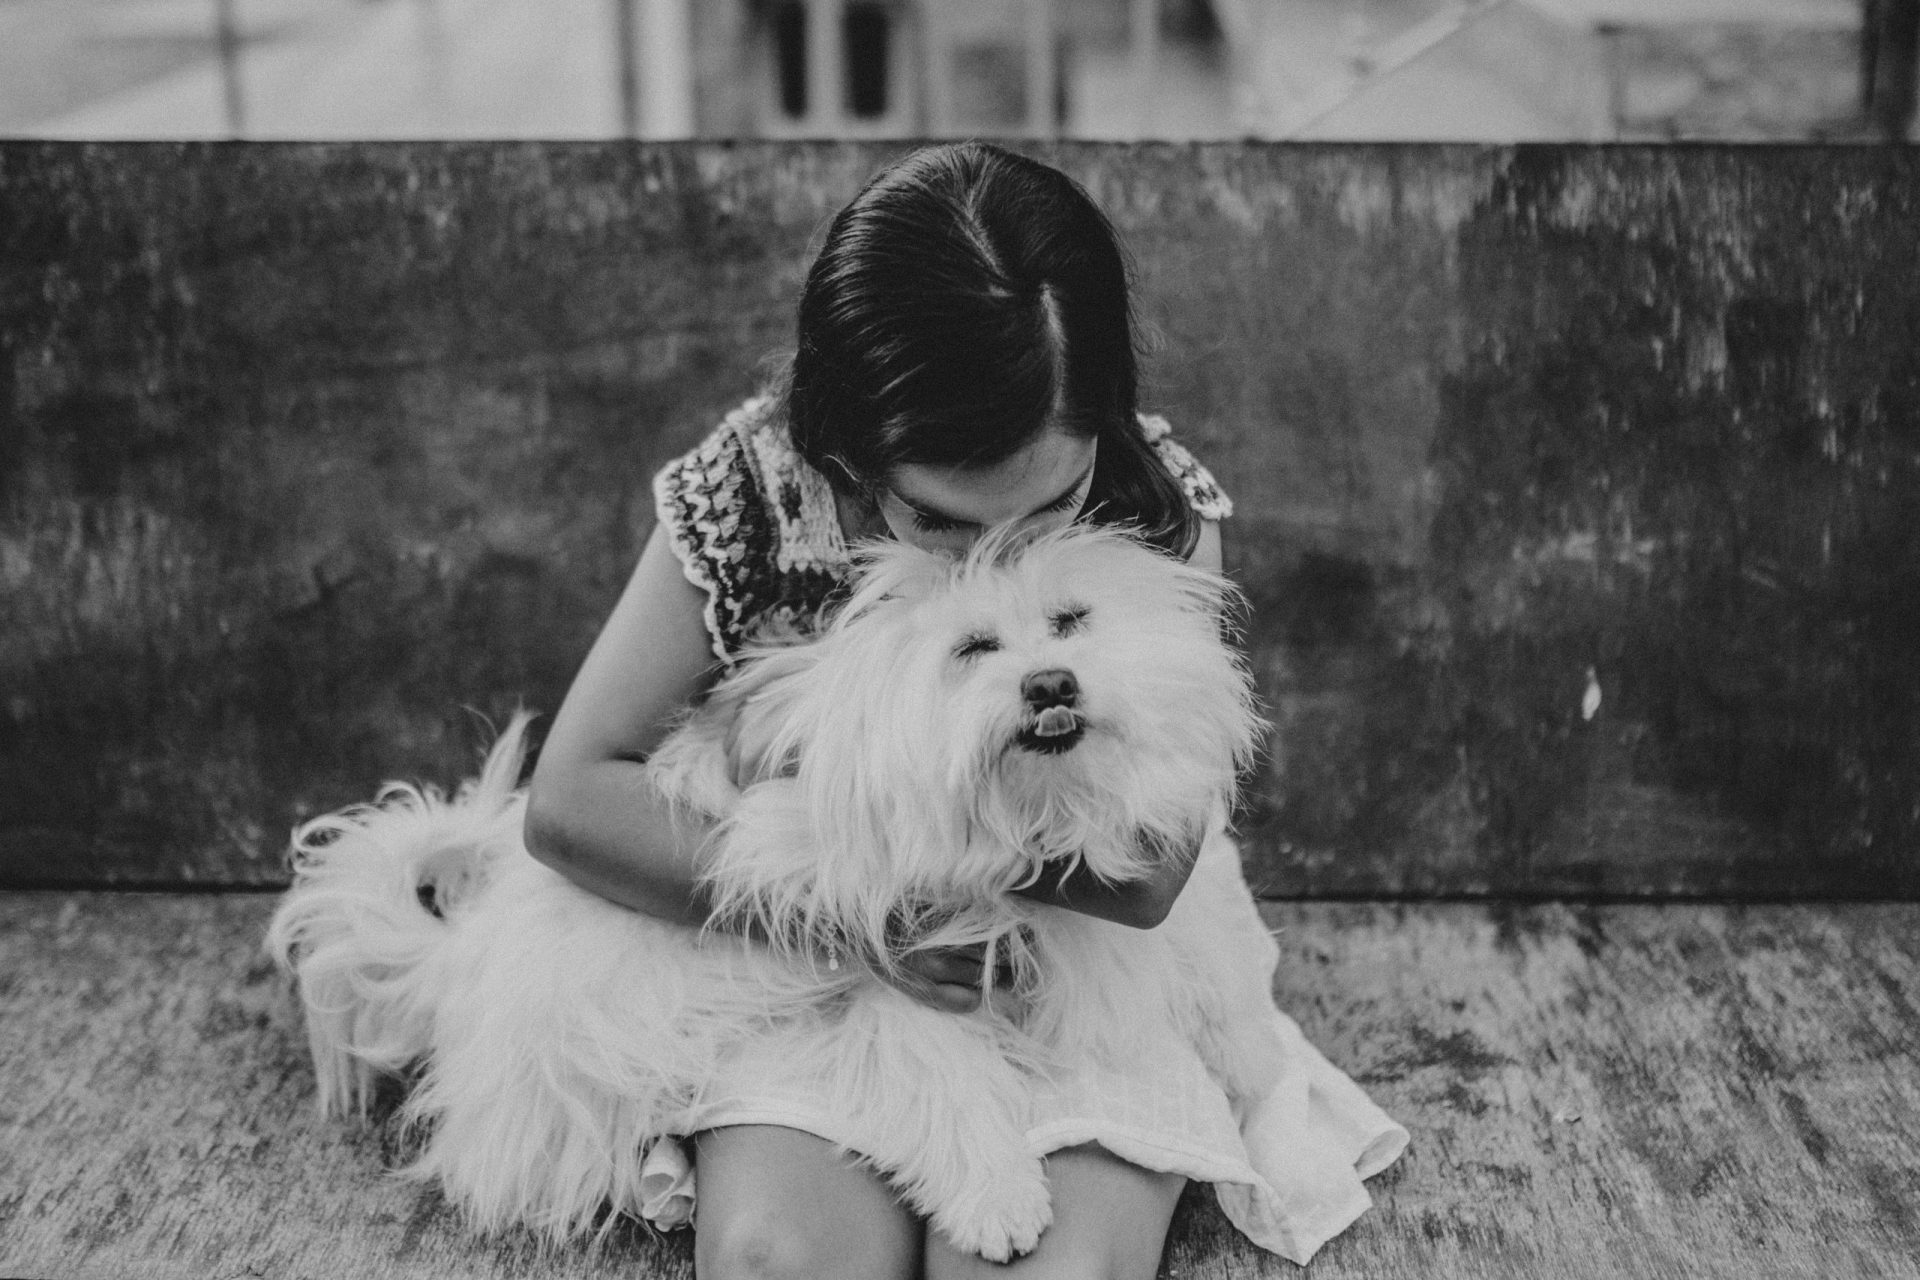 Fotografía en blanco y negro de una niña jugando con un perro